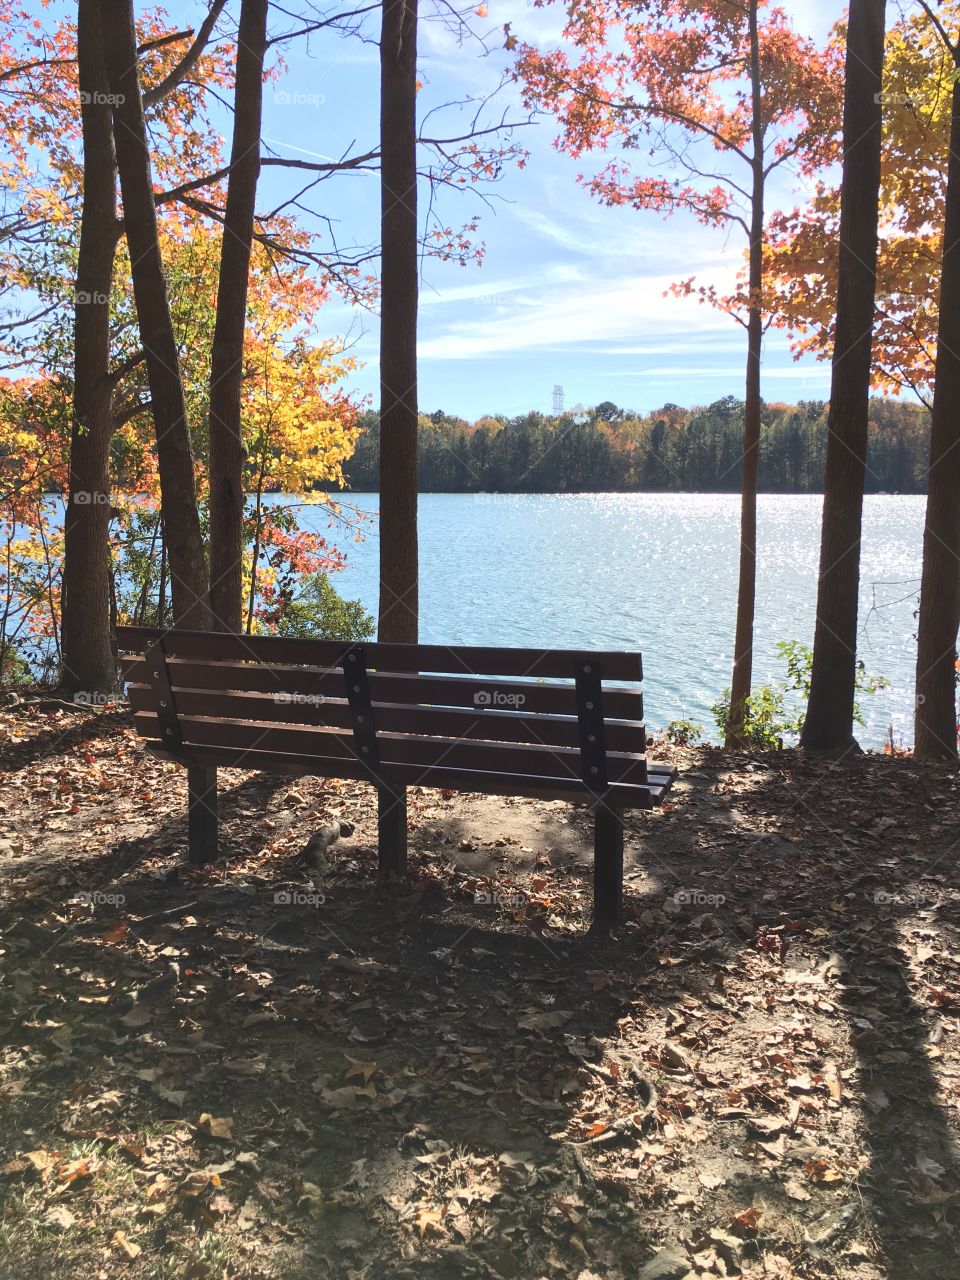 Park bench at the lake